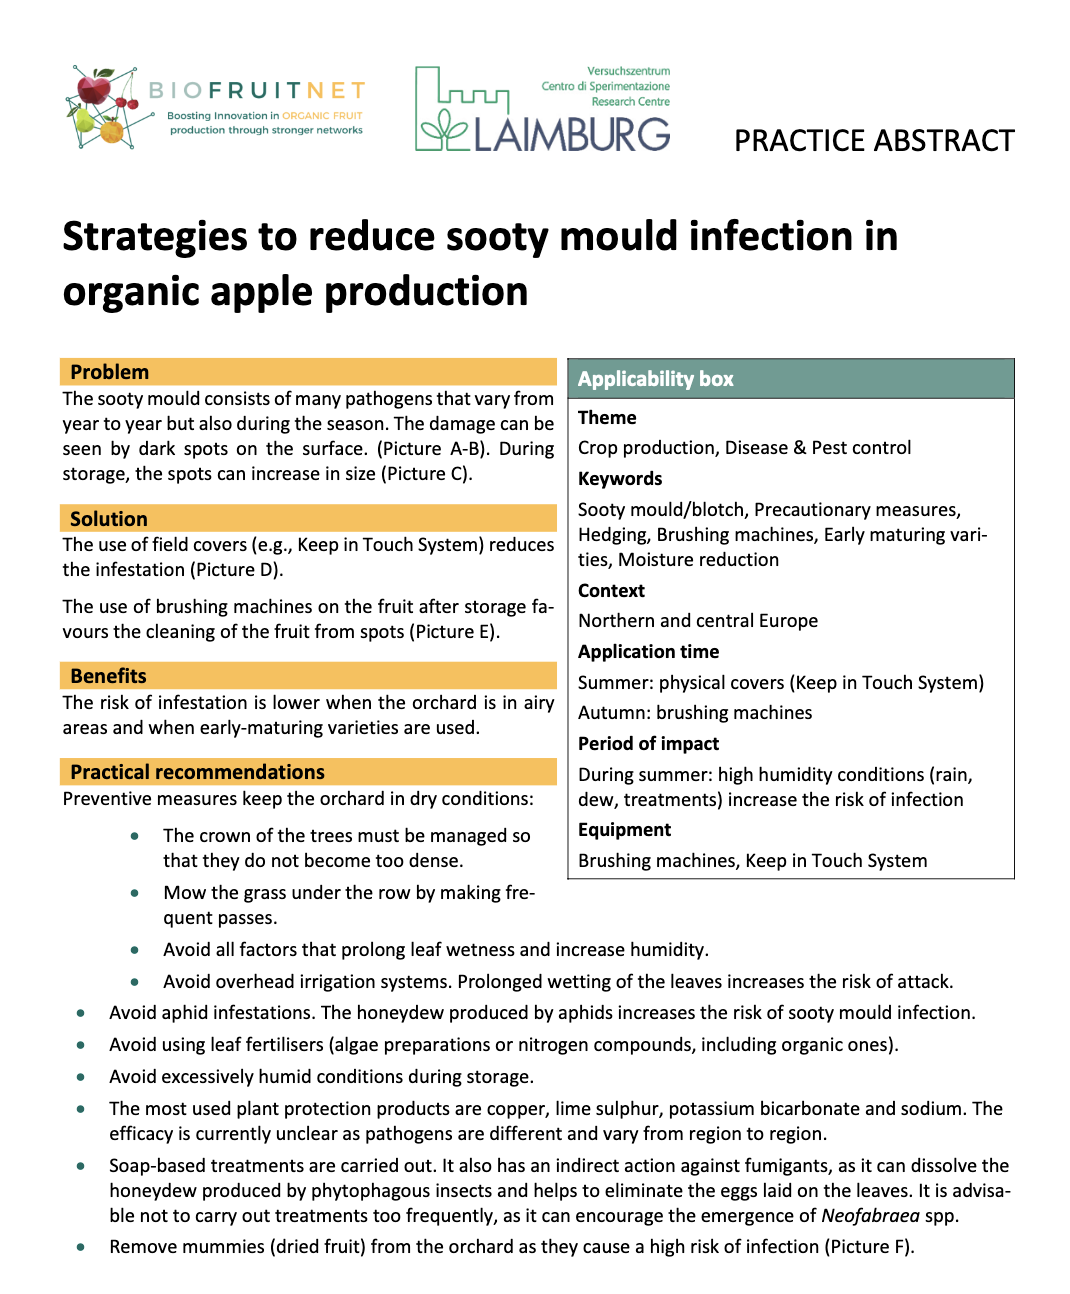 Stratégies pour réduire l'infection par la fumagine dans la production de pommes biologiques (BIOFRUITNET Practice Abstract)